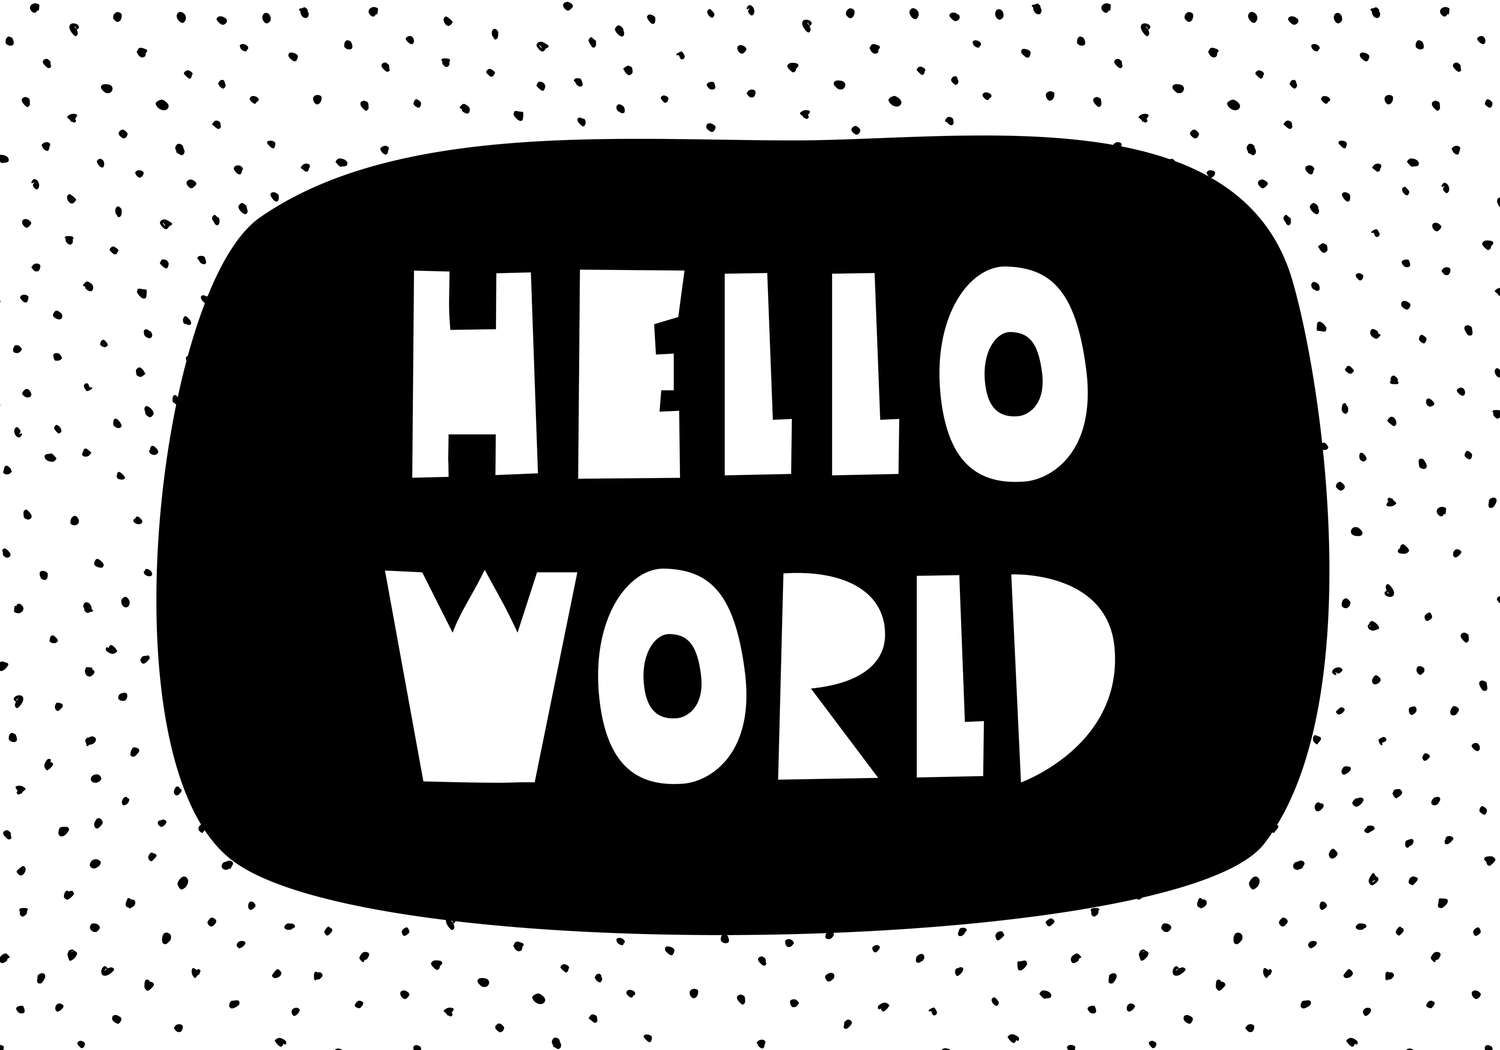             Fotomurali per la camera dei bambini con la scritta "Hello World" - Materiali non tessuto liscio e leggermente lucido
        